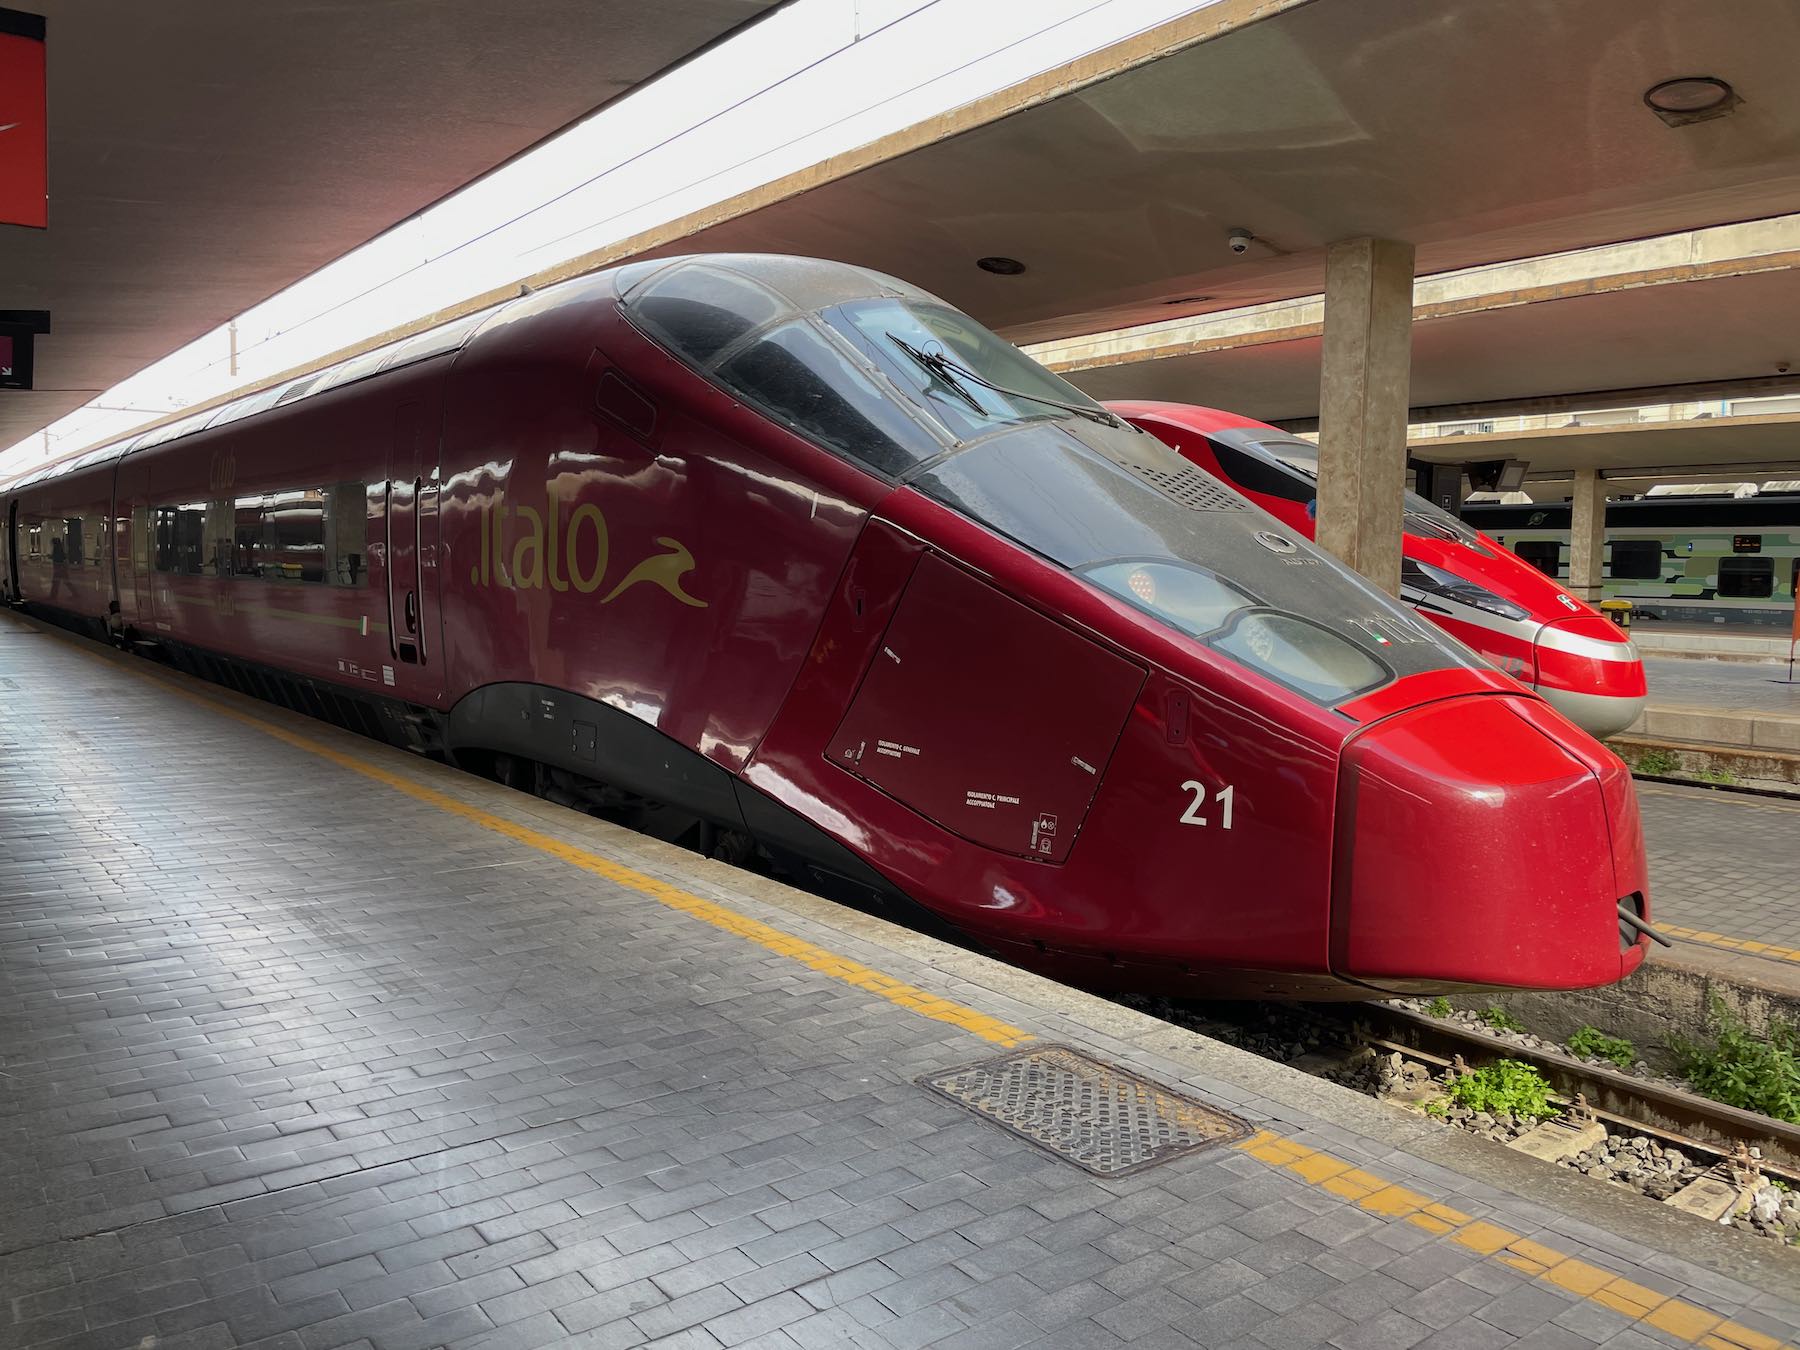 Italo's high-speed train 